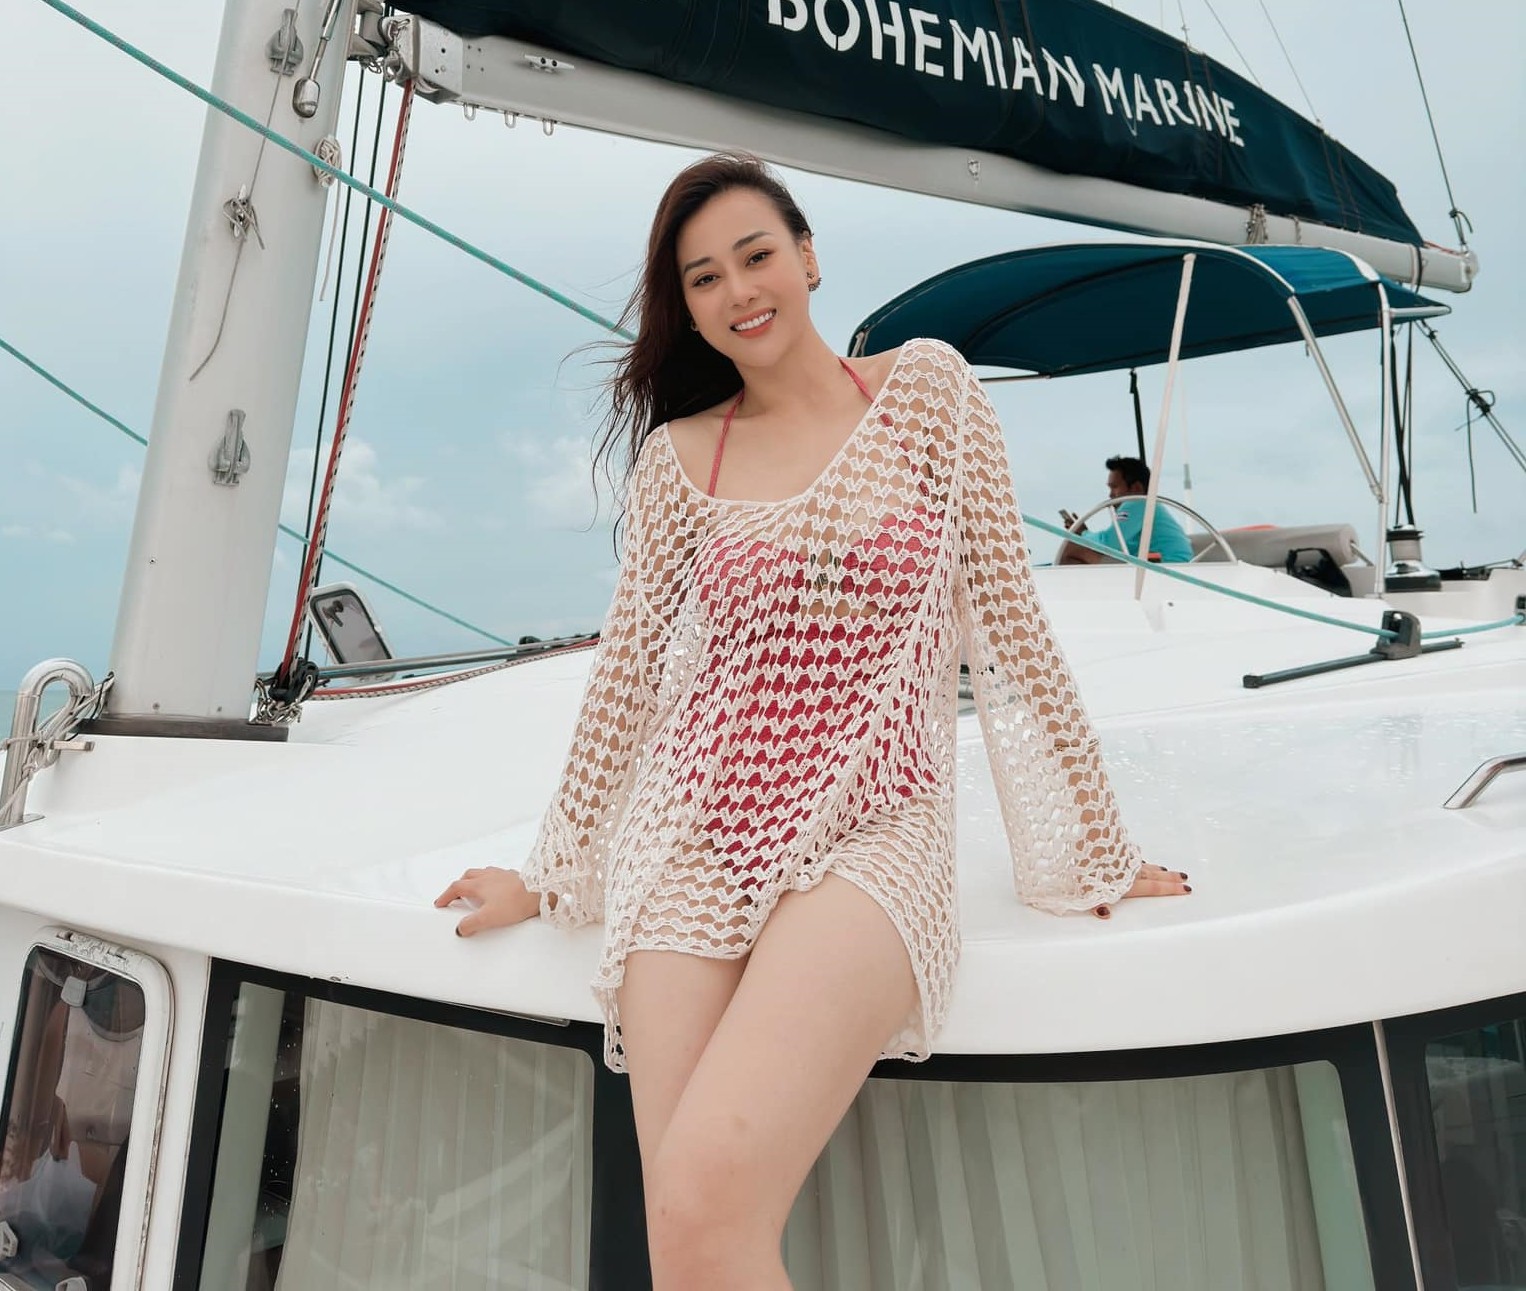 Phương Oanh không còn thích diện hở khi đi biển sau khi làm vợ Shark Bình? - 1